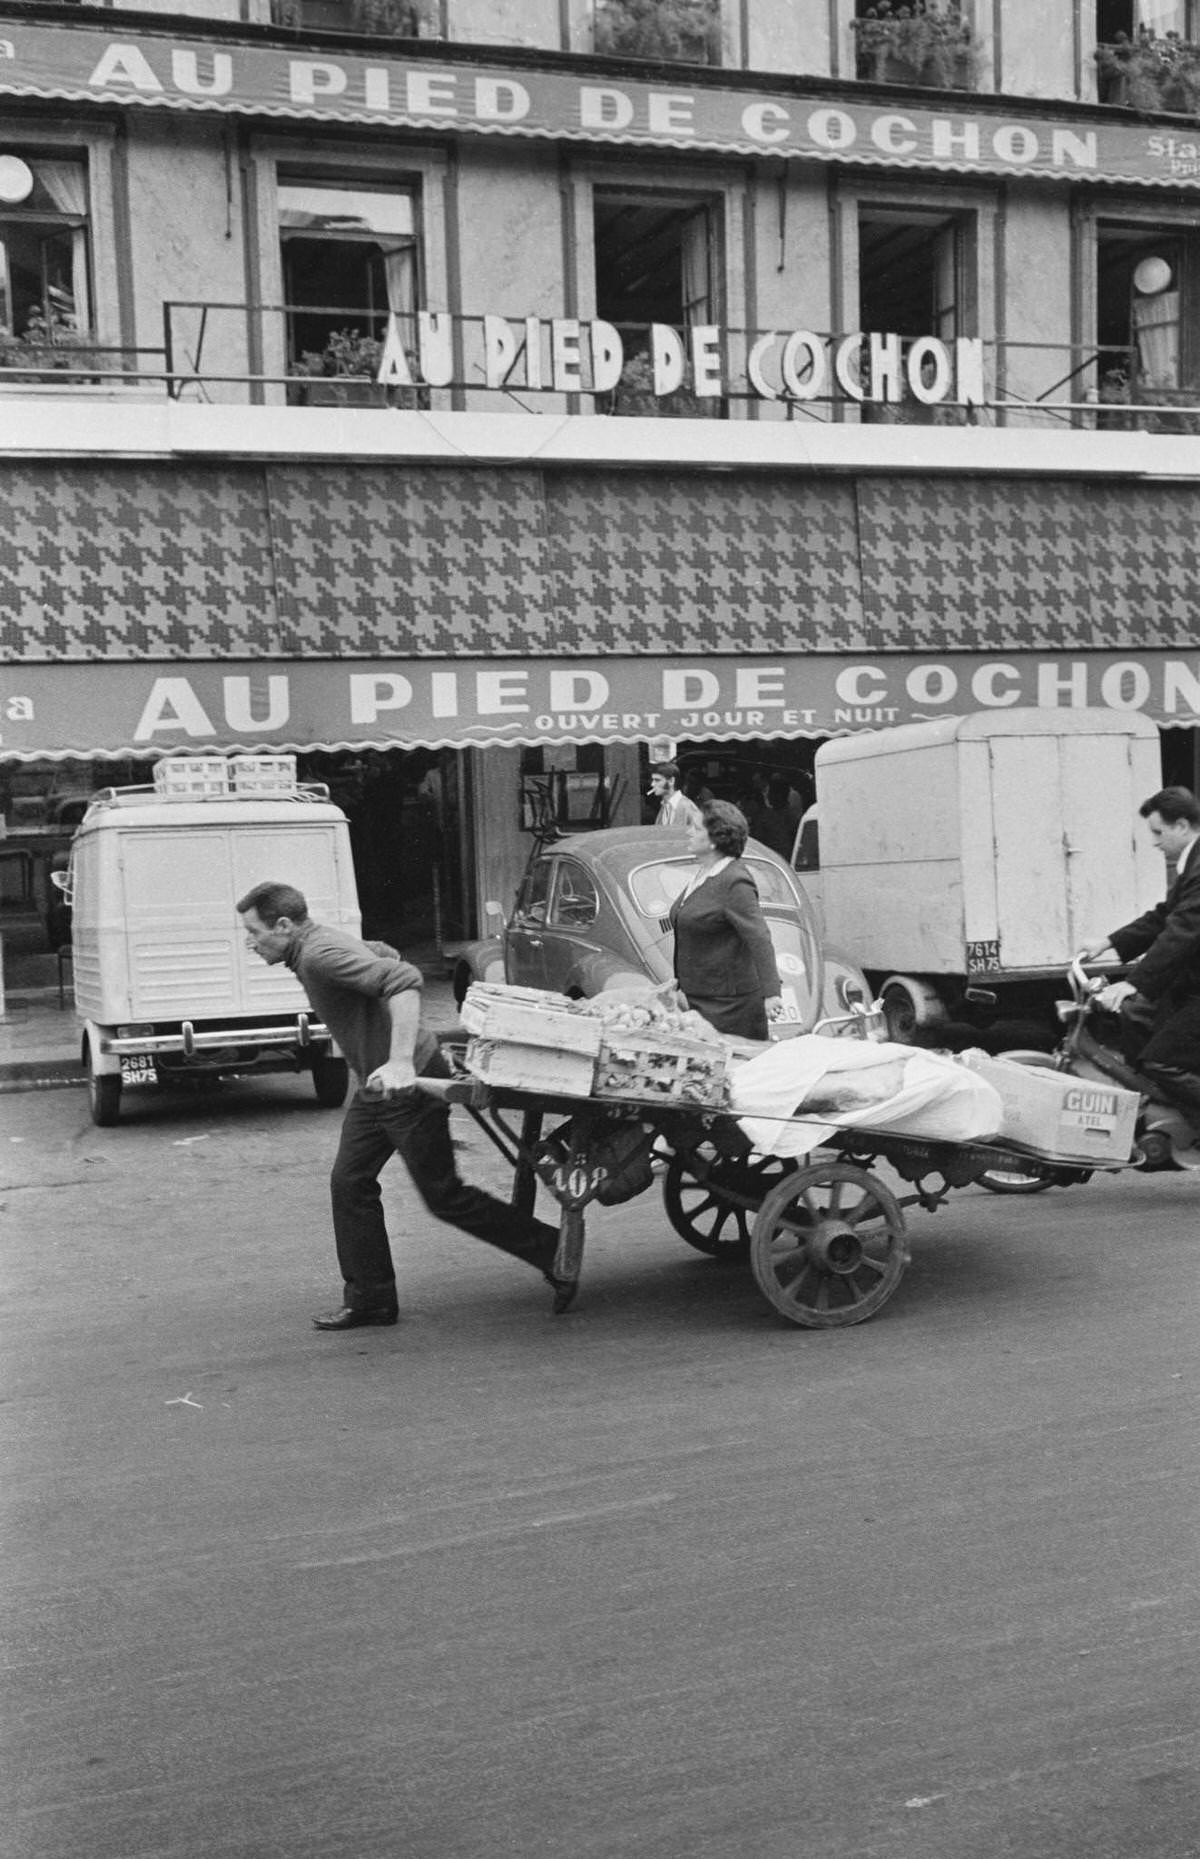 The famous restaurant 'Au Pied de Cochon' in the Les Halles district of Paris, 1968